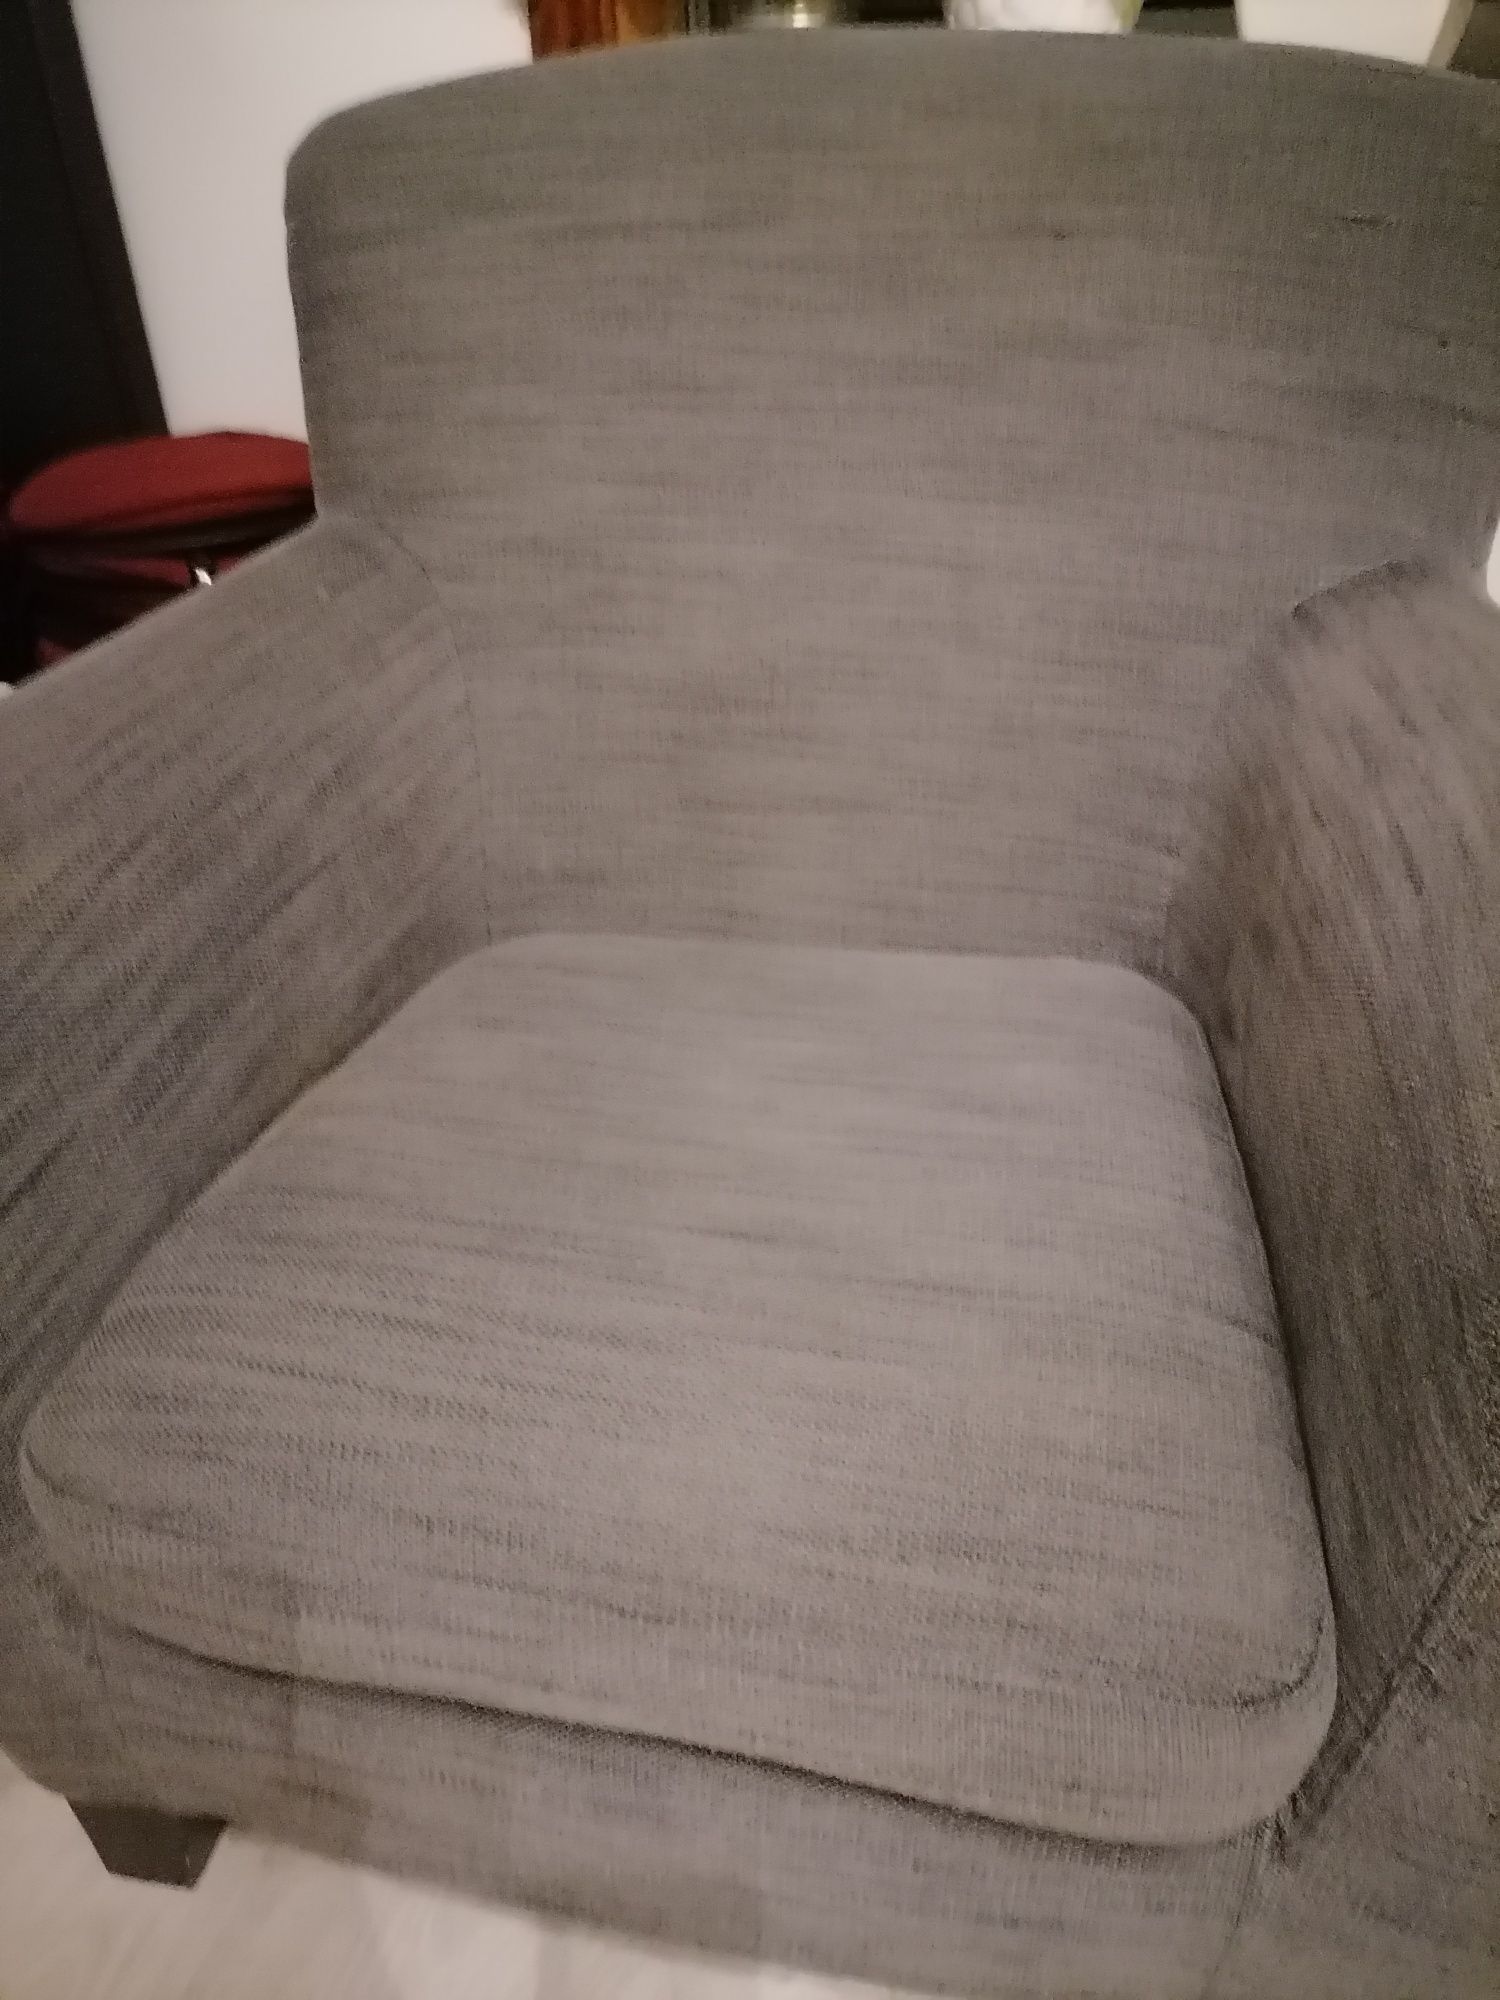 Sofa de 1 lugar cinza usado